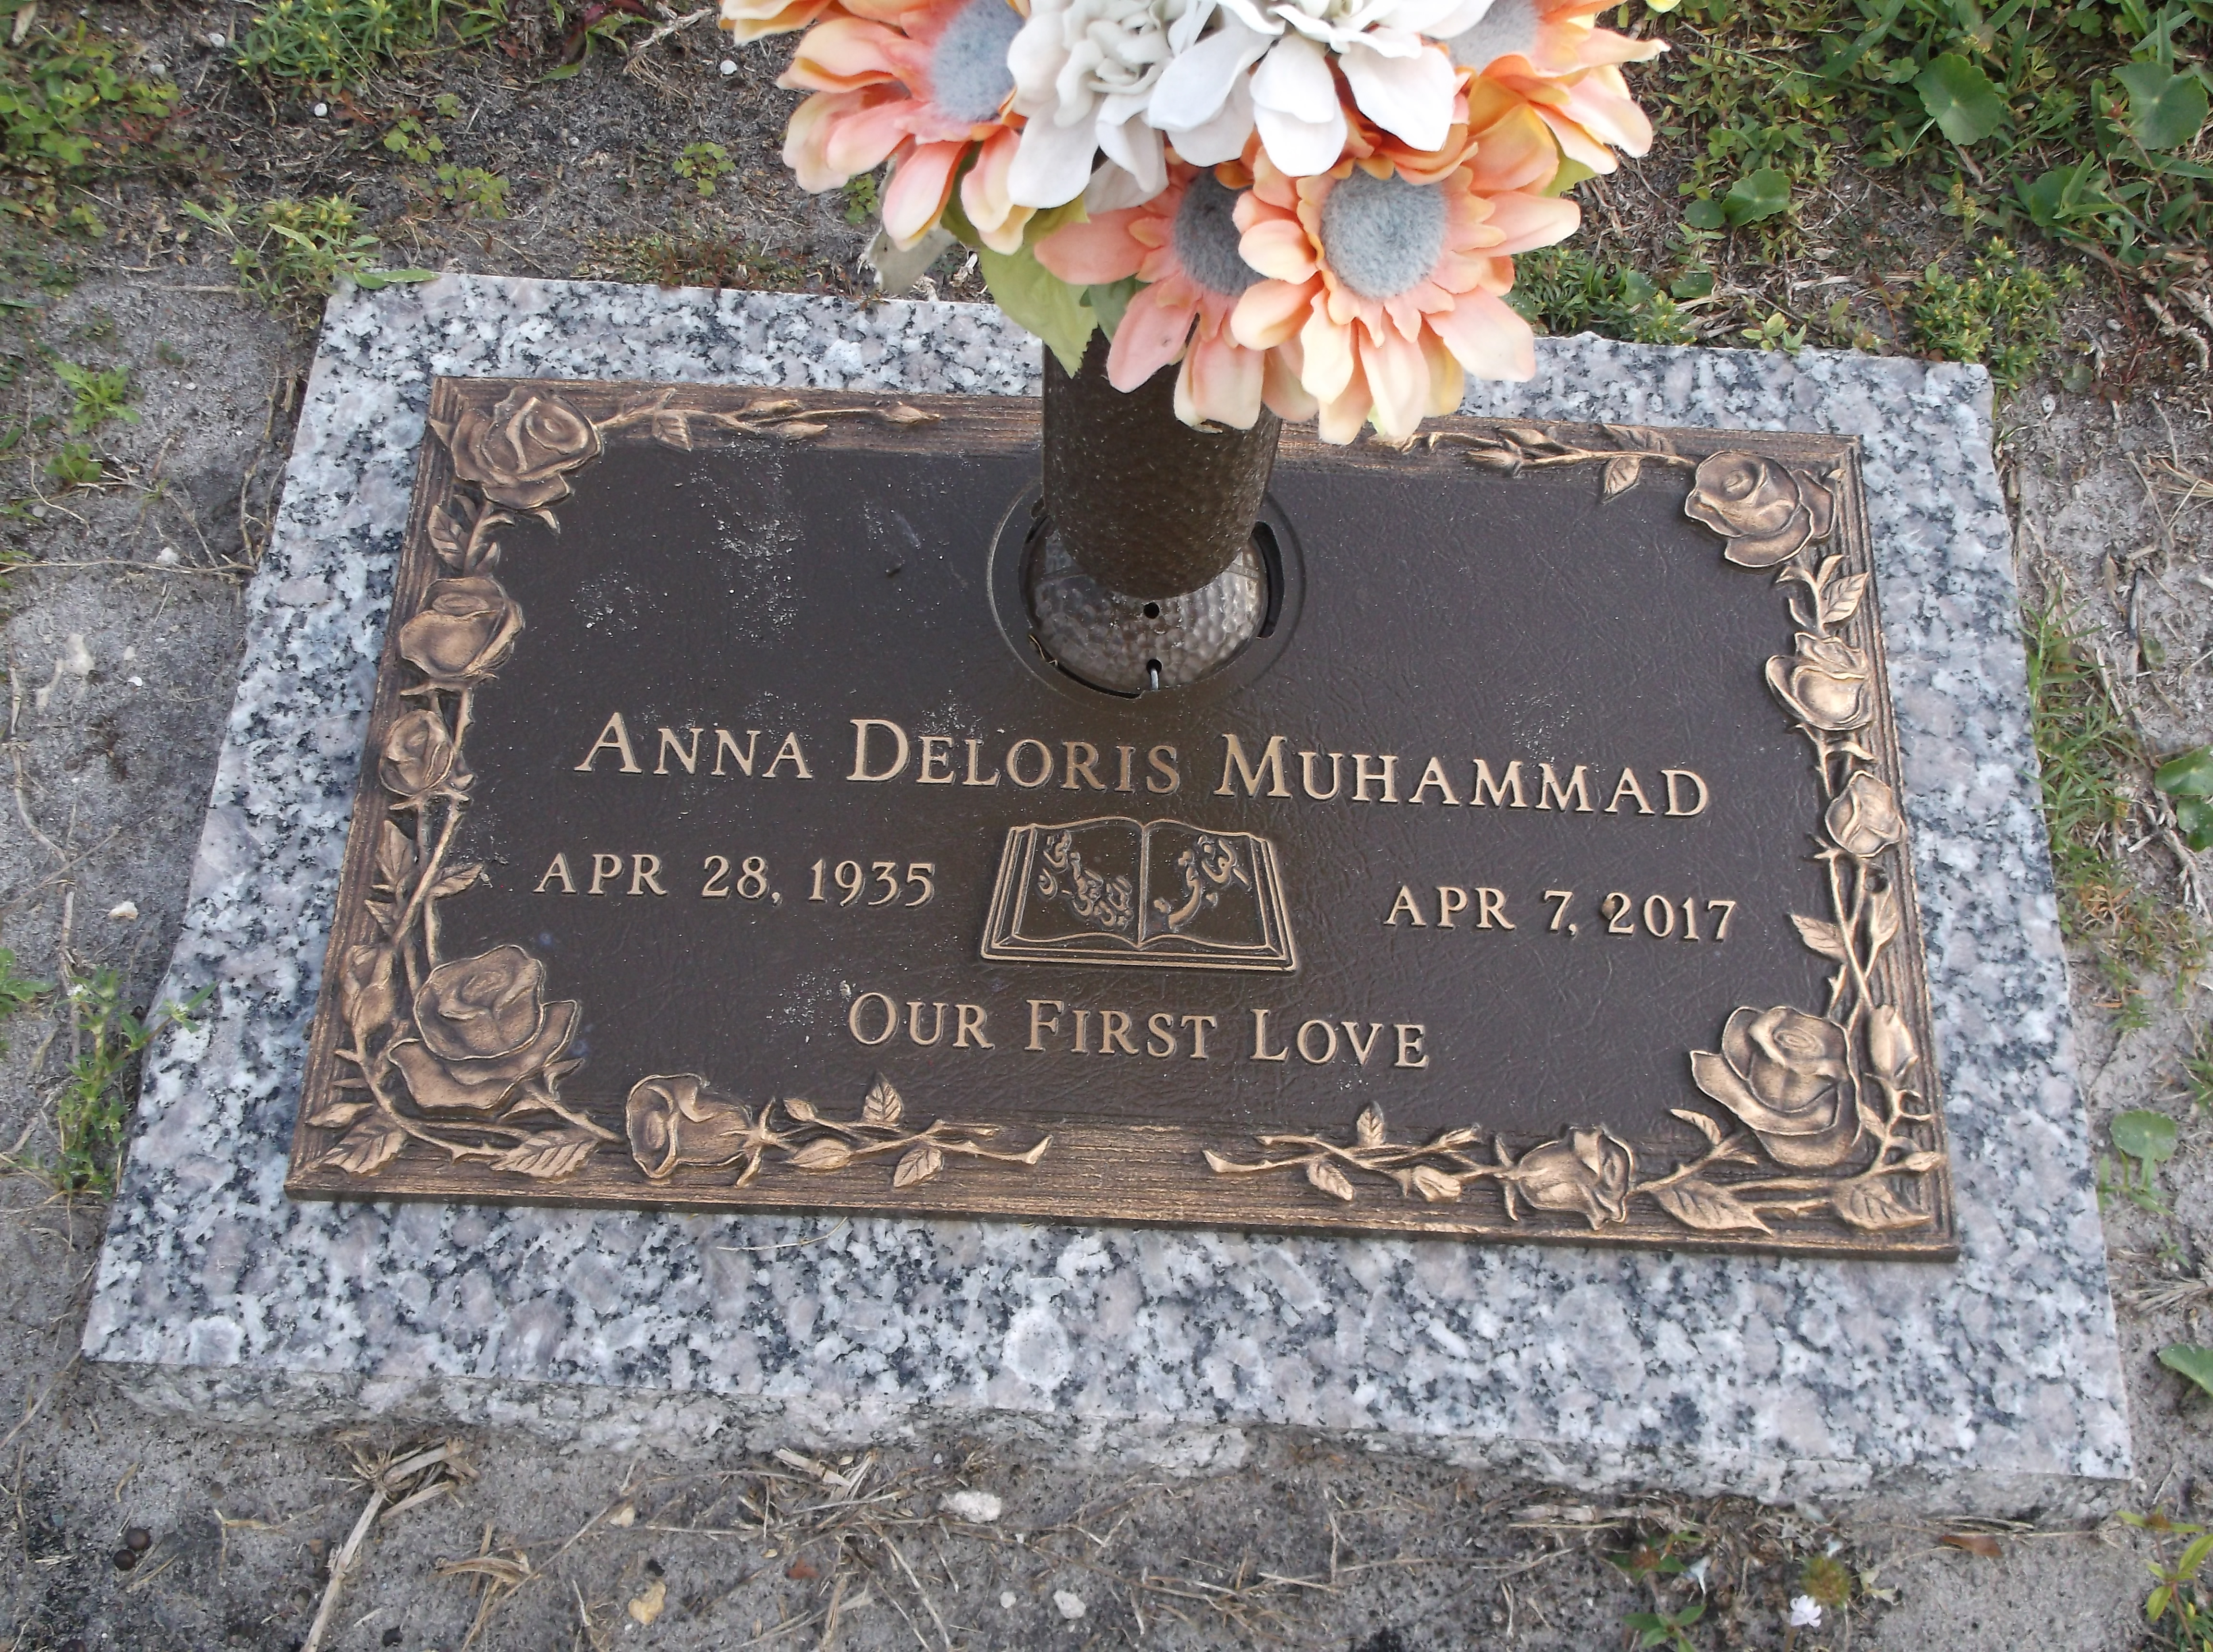 Anna Deloris Muhammad